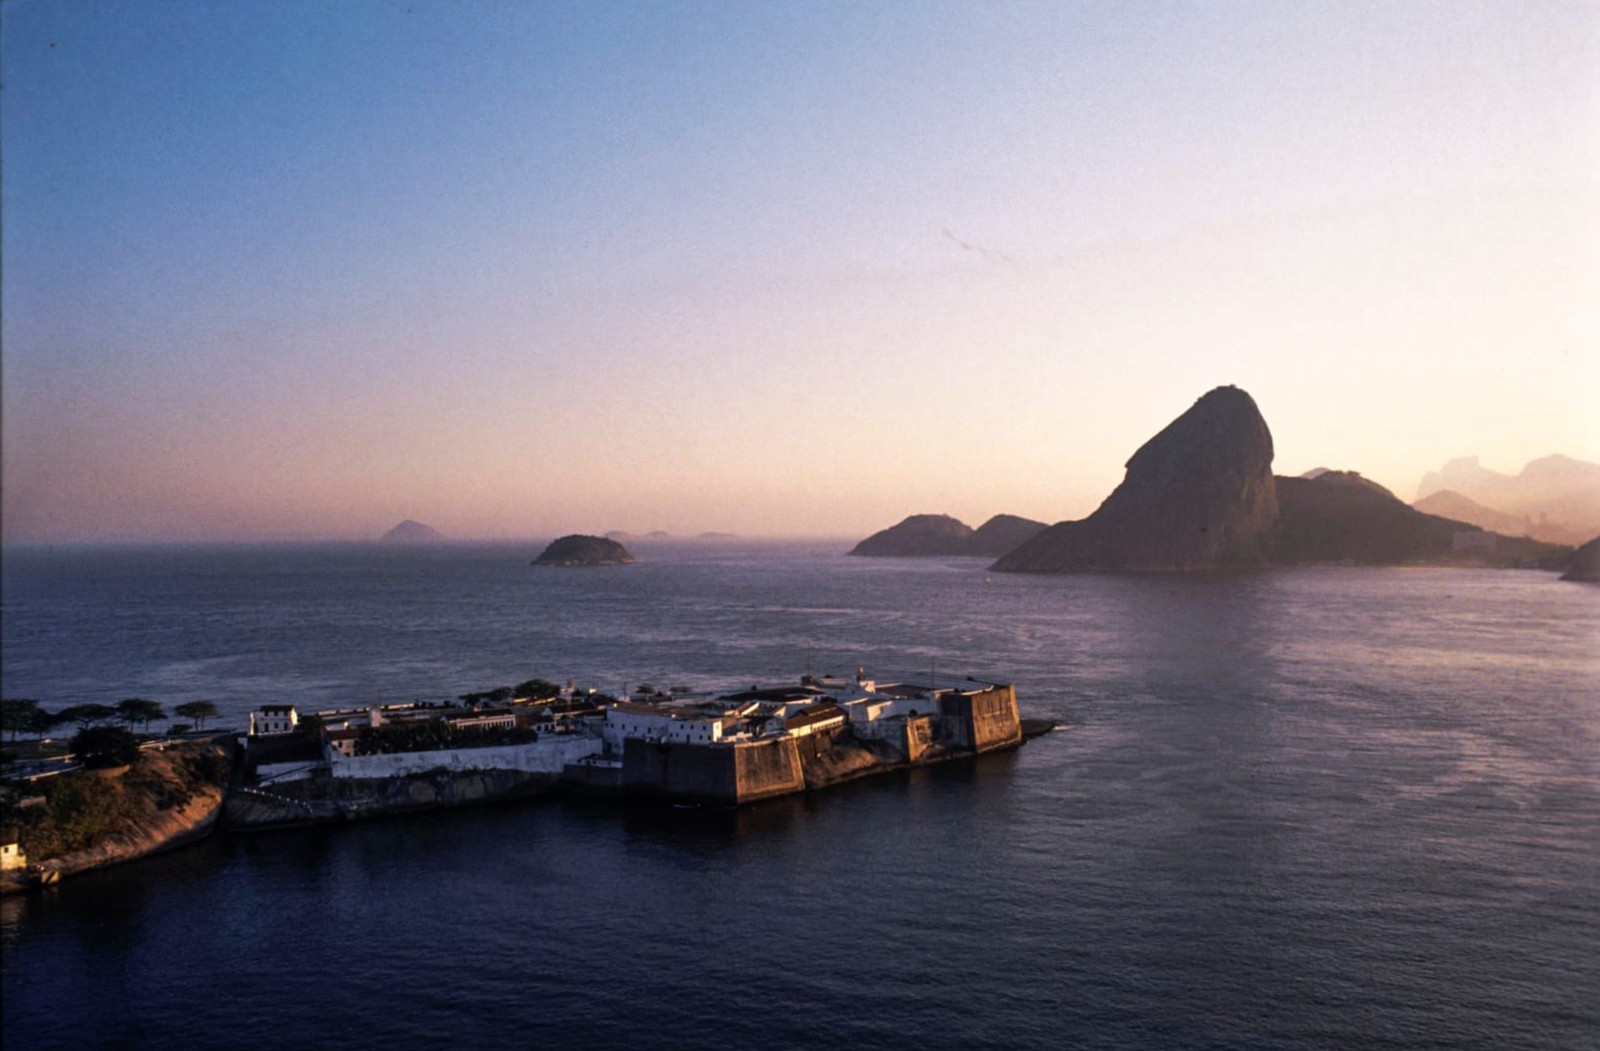 De autoria de Ricardo Siqueira, registro da paisagem do Rio de Janeiro integra o fotolivro "Água salgada — A alma da cidade do Rio de Janeiro" 